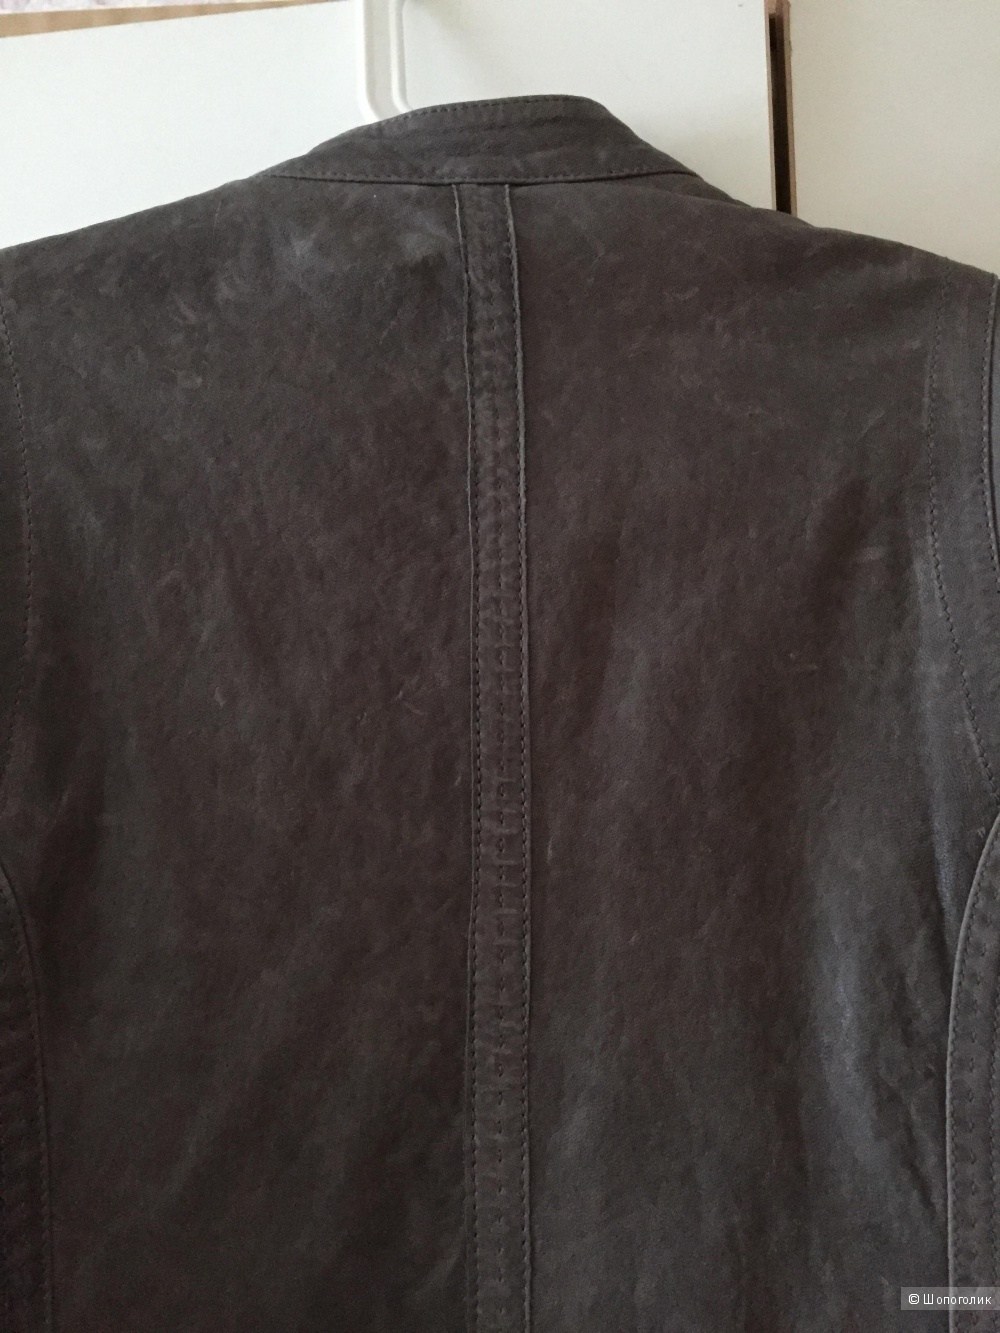 Кожаная куртка французской марки CHEVIGNON размер L маломерит очень сильно!